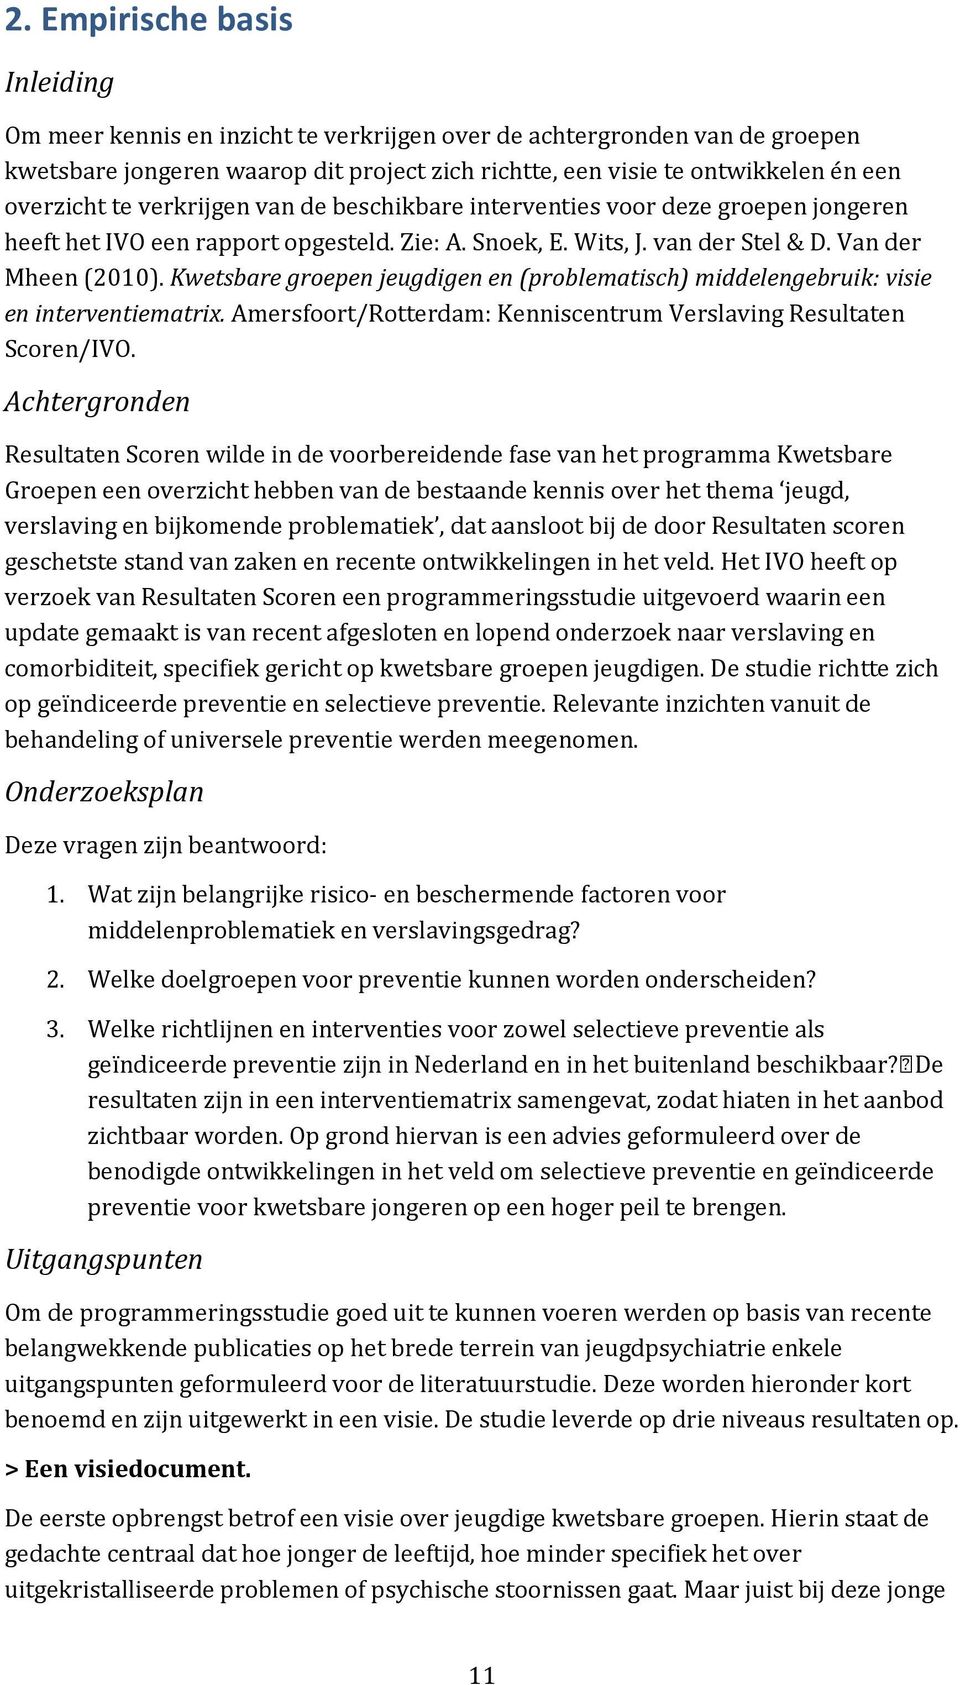 Kwetsbare groepen jeugdigen en (problematisch) middelengebruik: visie en interventiematrix. Amersfoort/Rotterdam: Kenniscentrum Verslaving Resultaten Scoren/IVO.